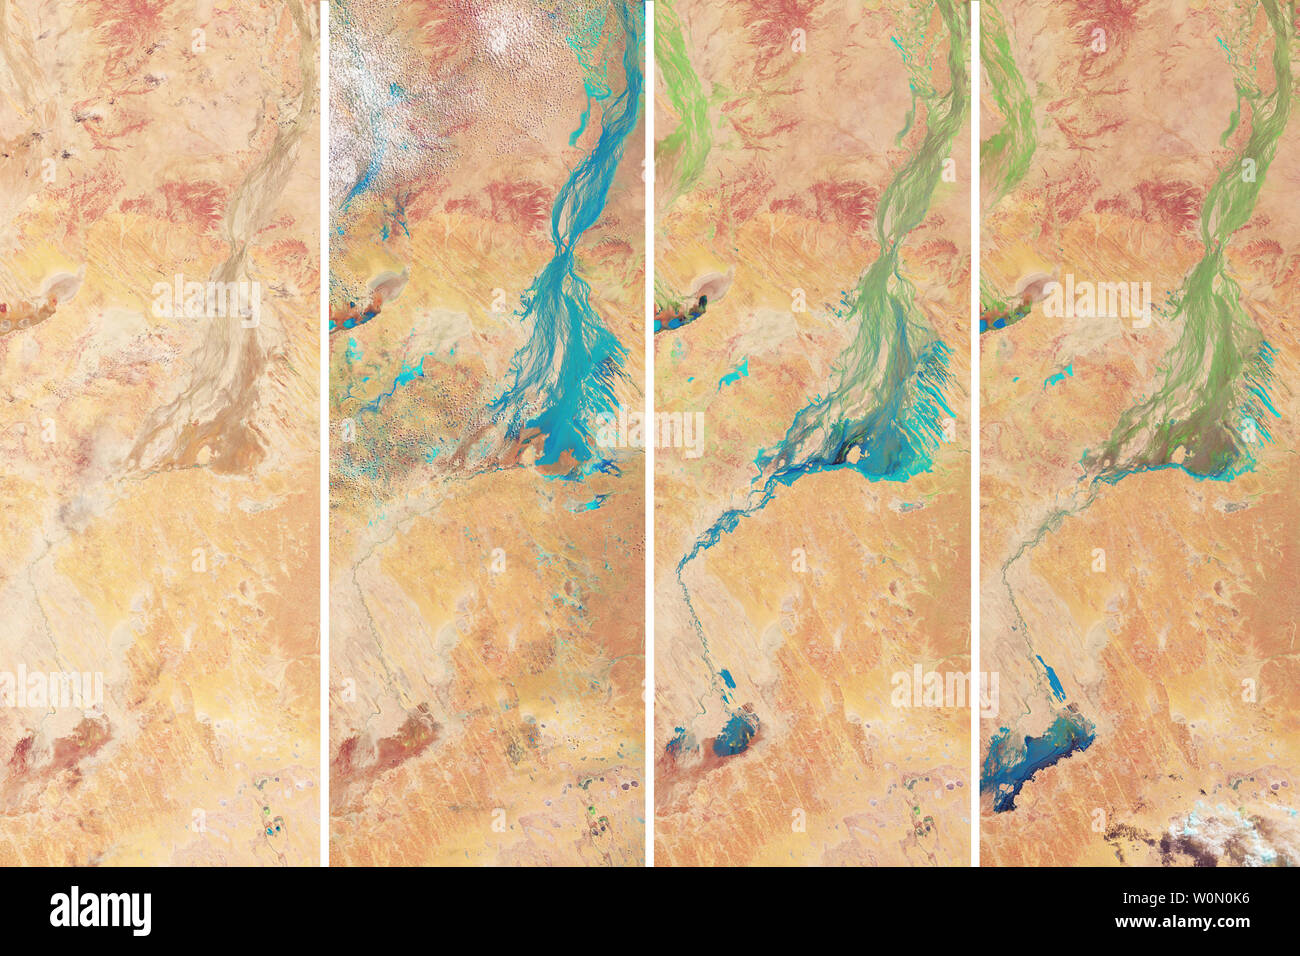 Il lago Eyre Basin all'interno dell'Australia è tra i luoghi più secchi del continente. Con meno di 5 pollici di pioggia caduta in questa zona ogni anno i torrenti e ruscelli che scarico nel lago EyreÑthe punto più basso in AustraliaÑare osso di solito asciutto, sterile e il marrone. Occasionalmente, i canali di fare riempire dopo downpoursÑand pesante creare un tappeto di colore verde. La Terra operative imager (OLI) sul satellite Landsat 8 osservata questa trasformazione in una serie di immagini falso colore acquisita tra il 24 febbraio e aprile 25, 2018. Con questa combinazione di banda, acqua di inondazione appare in azzurro. La vegetazione è li Foto Stock